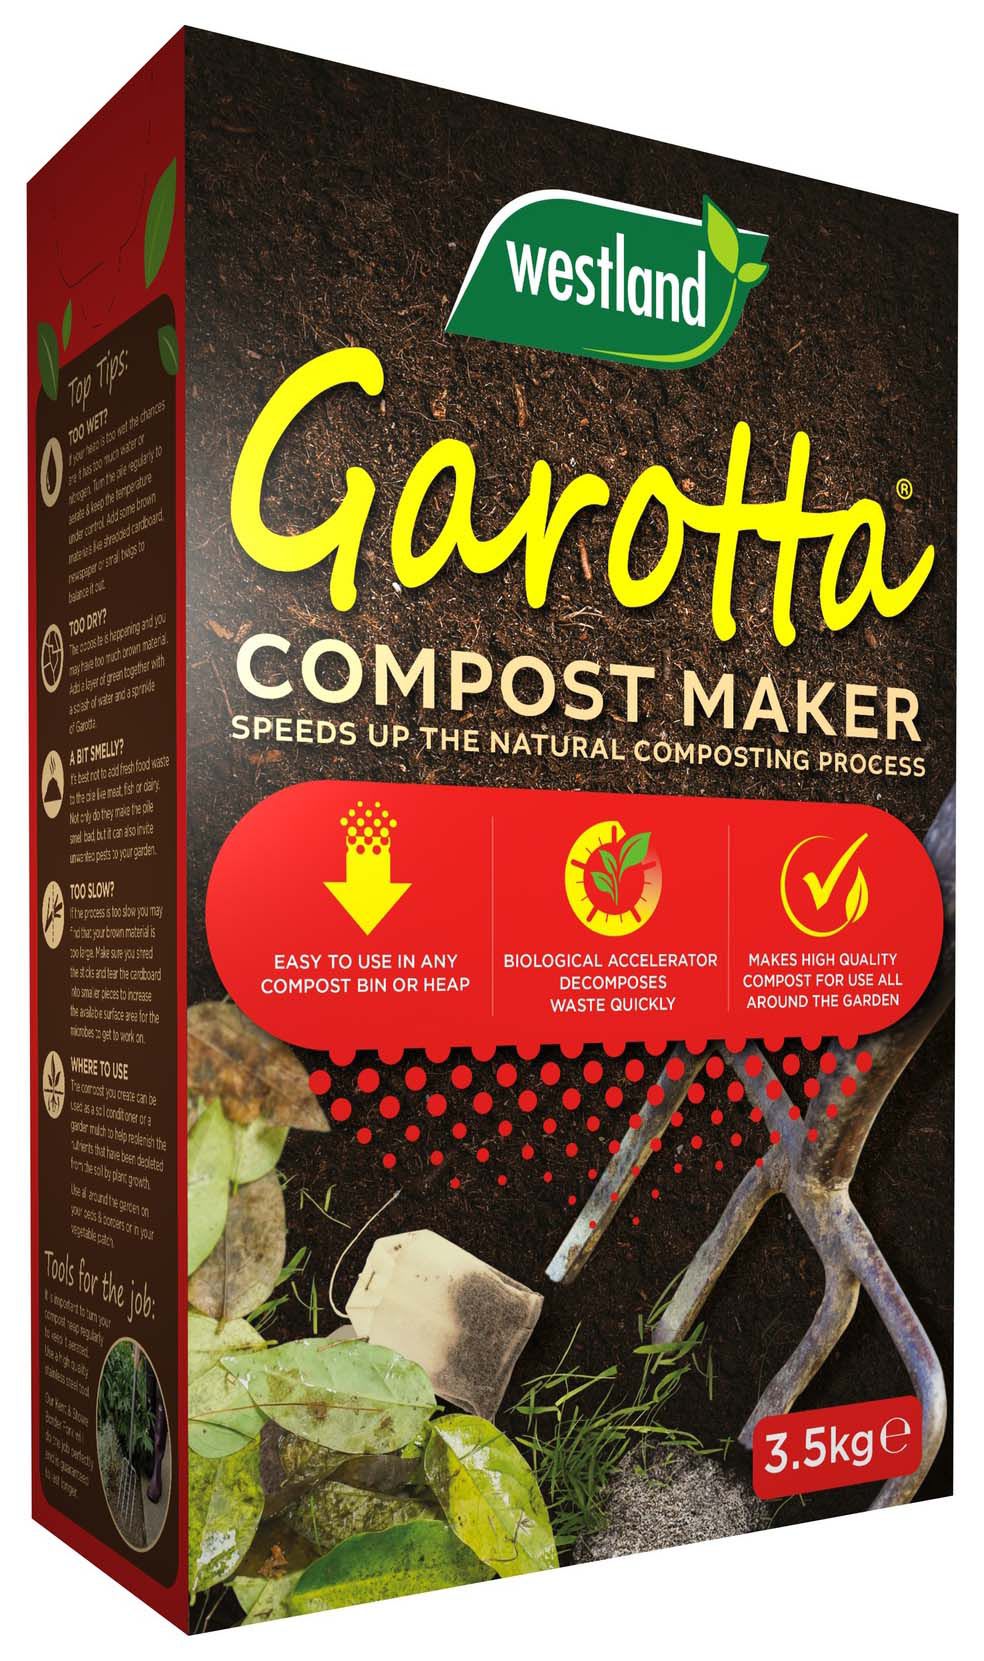 Westland Garrotta Compost Maker - 3.5kg